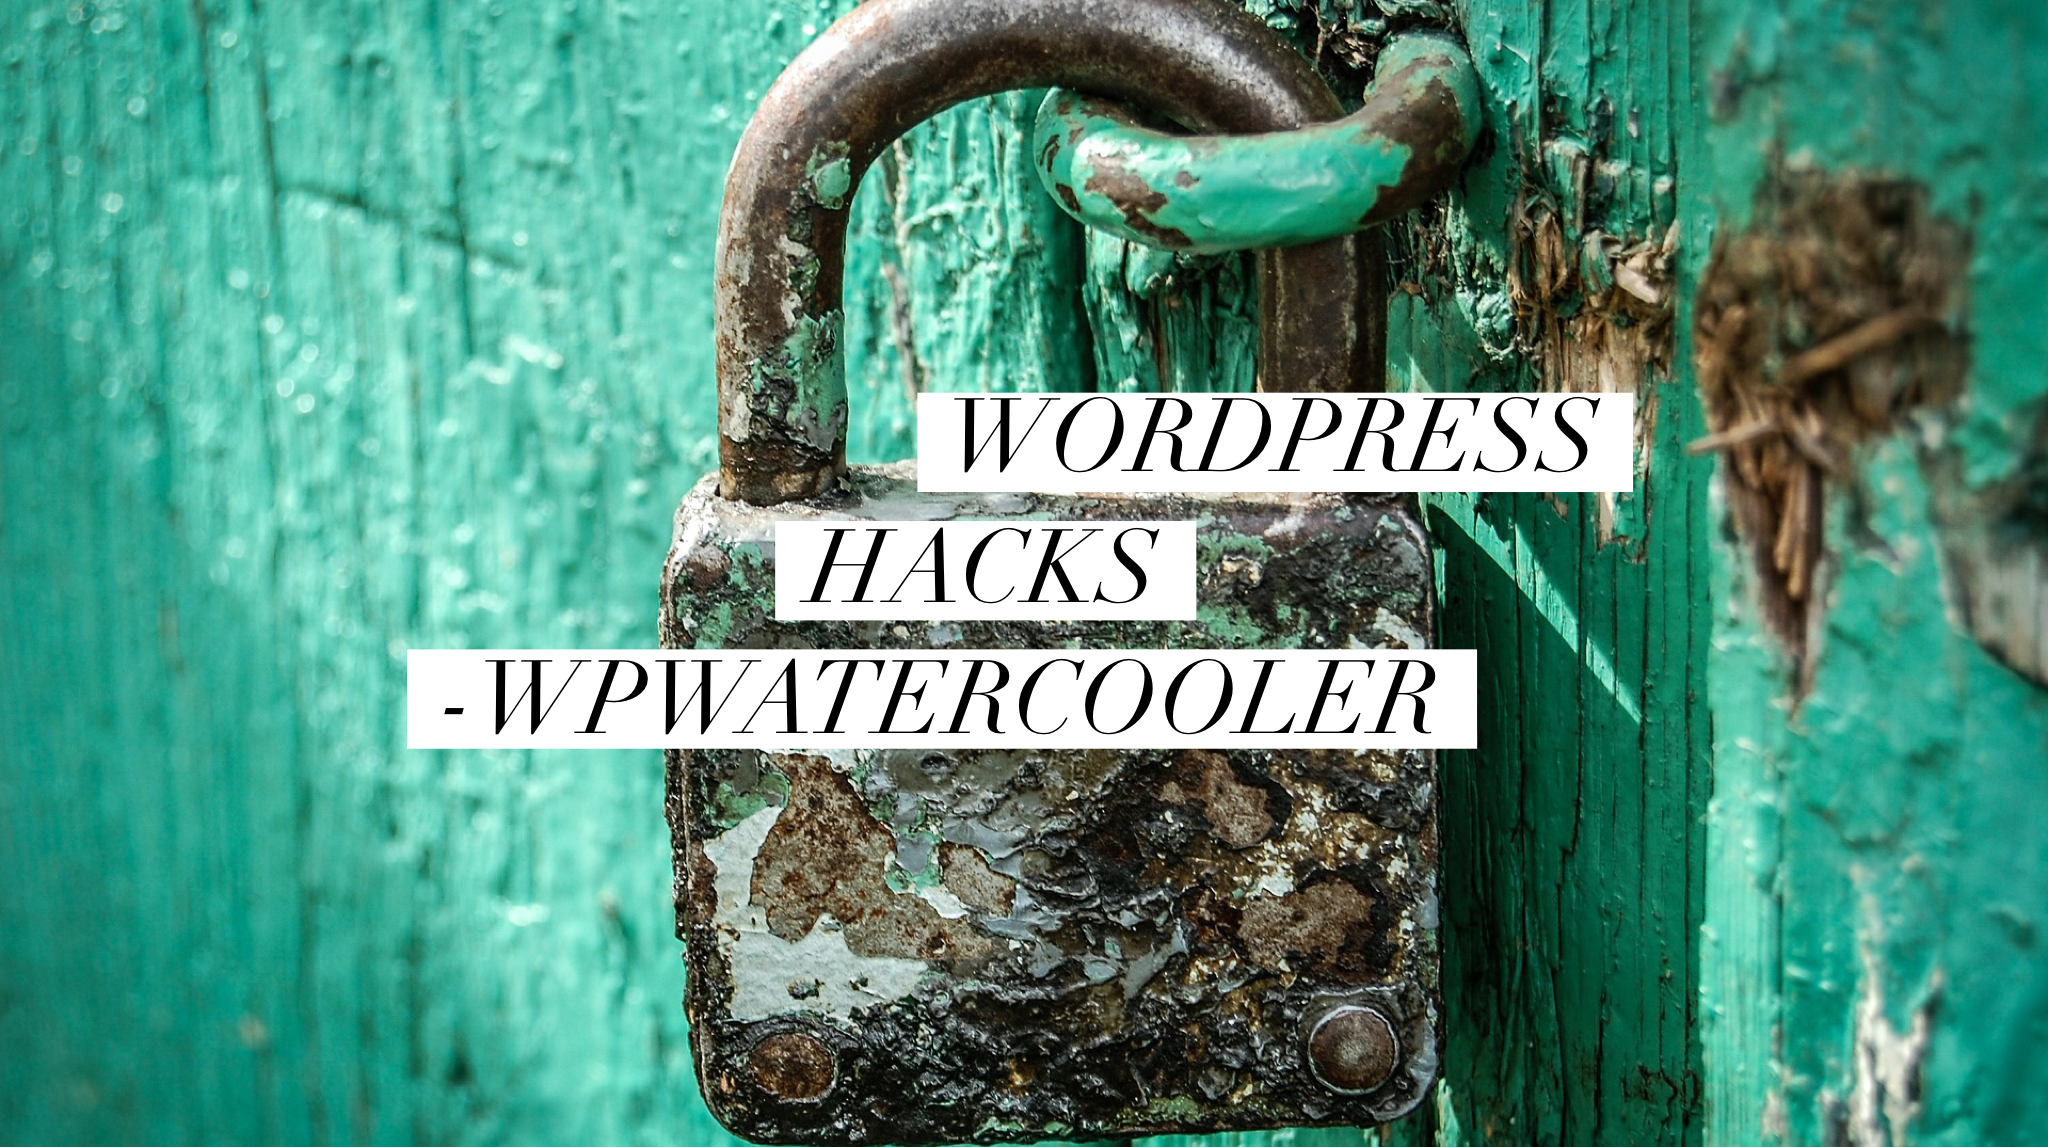 EP286 – WordPress Hacks